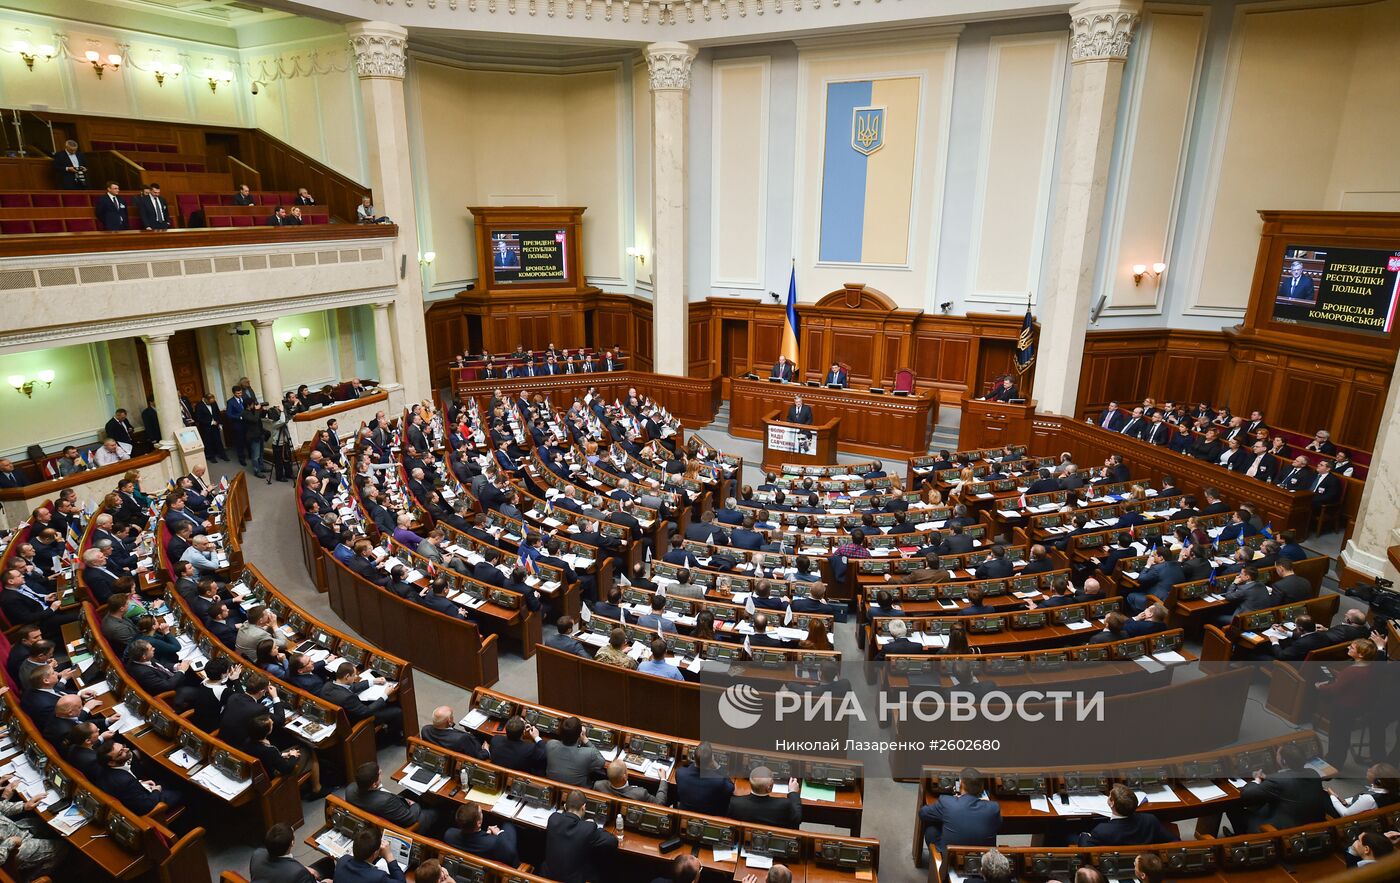 Заседание парламента в здании Верховной Рады Украины в Киеве